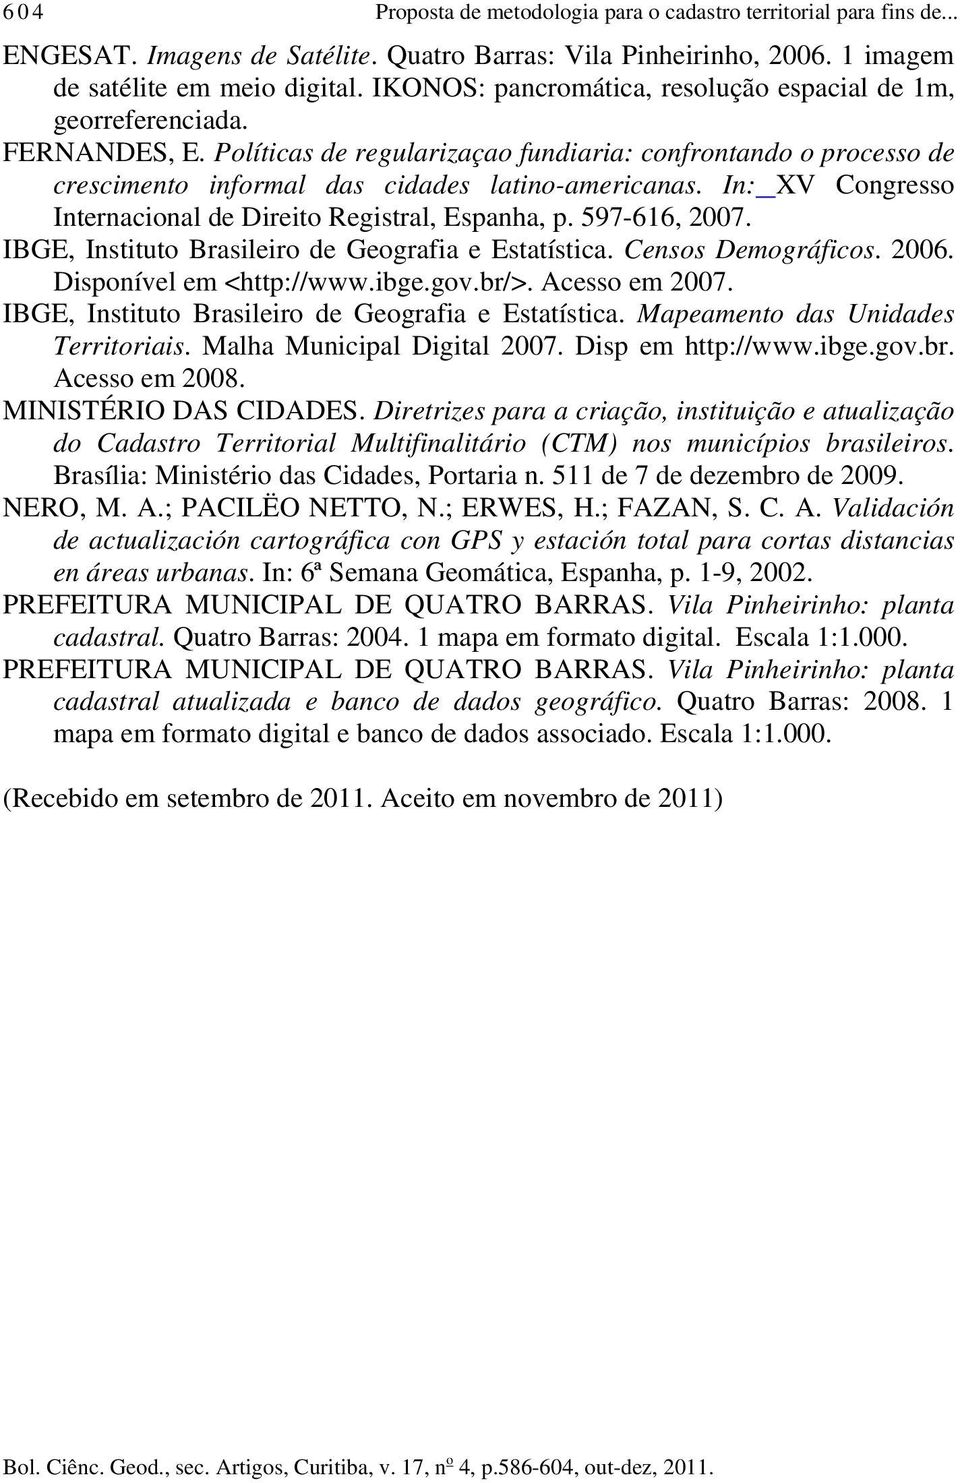 In: XV Congresso Internacional de Direito Registral, Espanha, p. 597-616, 2007. IBGE, Instituto Brasileiro de Geografia e Estatística. Censos Demográficos. 2006. Disponível em <http://www.ibge.gov.